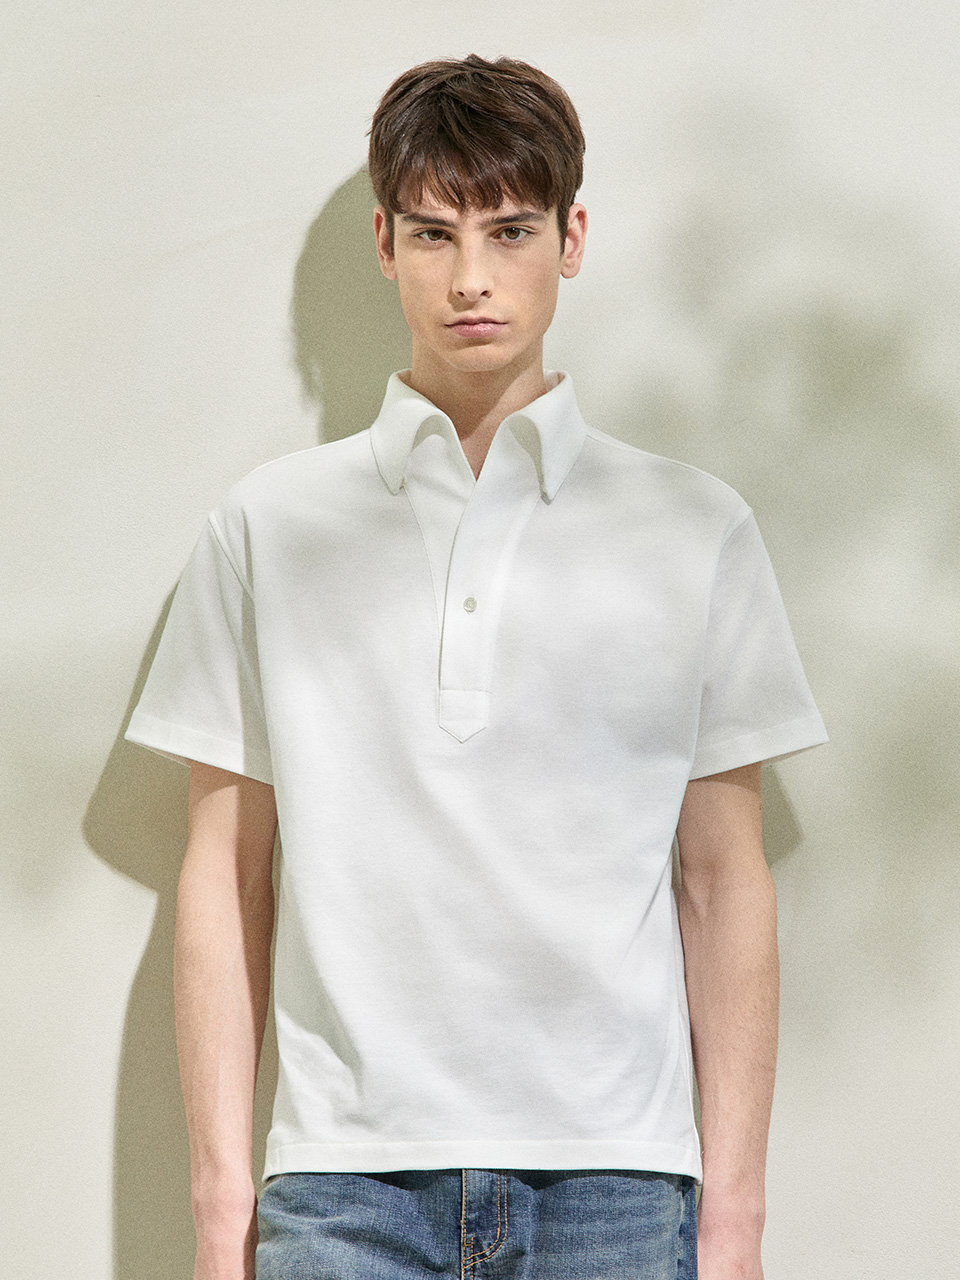 PK Silket 1-Button Polo Shirt Off White 01OW블랙브라운